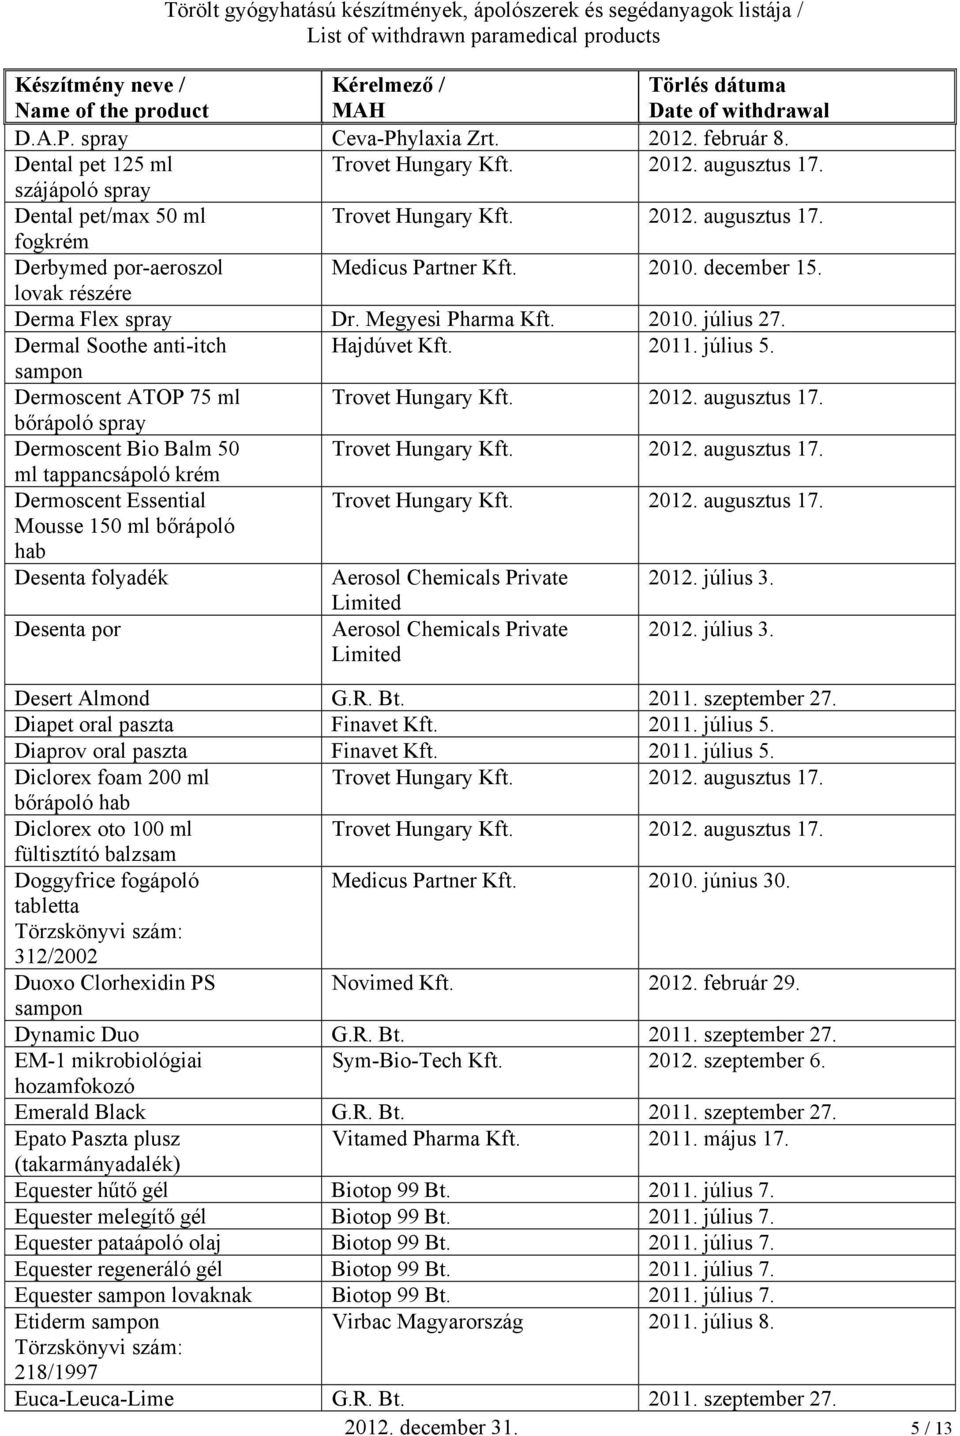 Törölt gyógyhatású készítmények, ápolószerek és segédanyagok listája / List  of withdrawn paramedical products - PDF Ingyenes letöltés